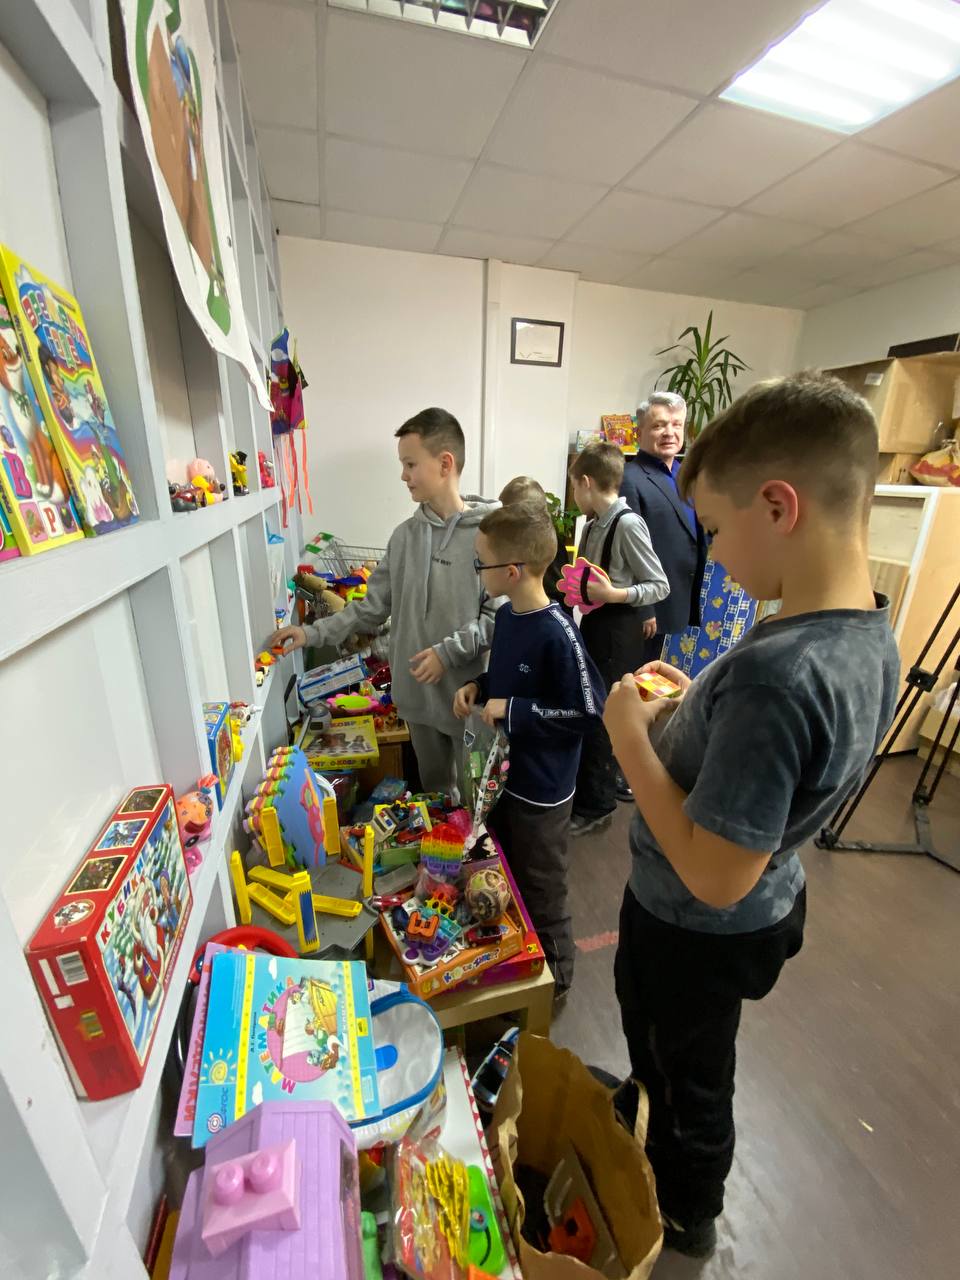 25 июня в Москве пройдет акция по обмену книгами, настольными играми и детскими игрушками «Зелёная суббота» - фото 2